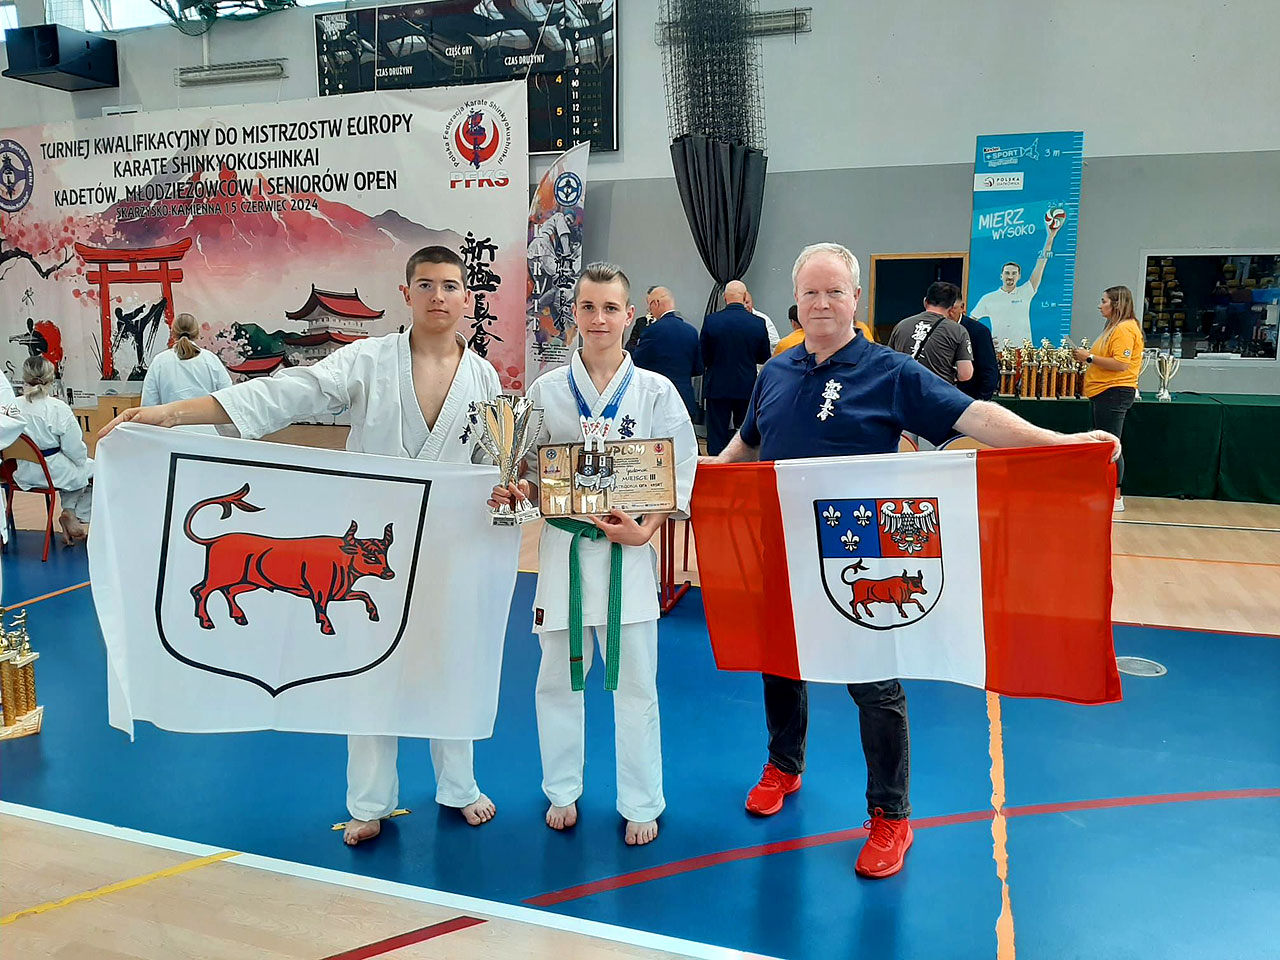 Turniej Kwalifikacyjny do Mistrzostw Europy Karate z udziałem zawodników KSiSW Turek